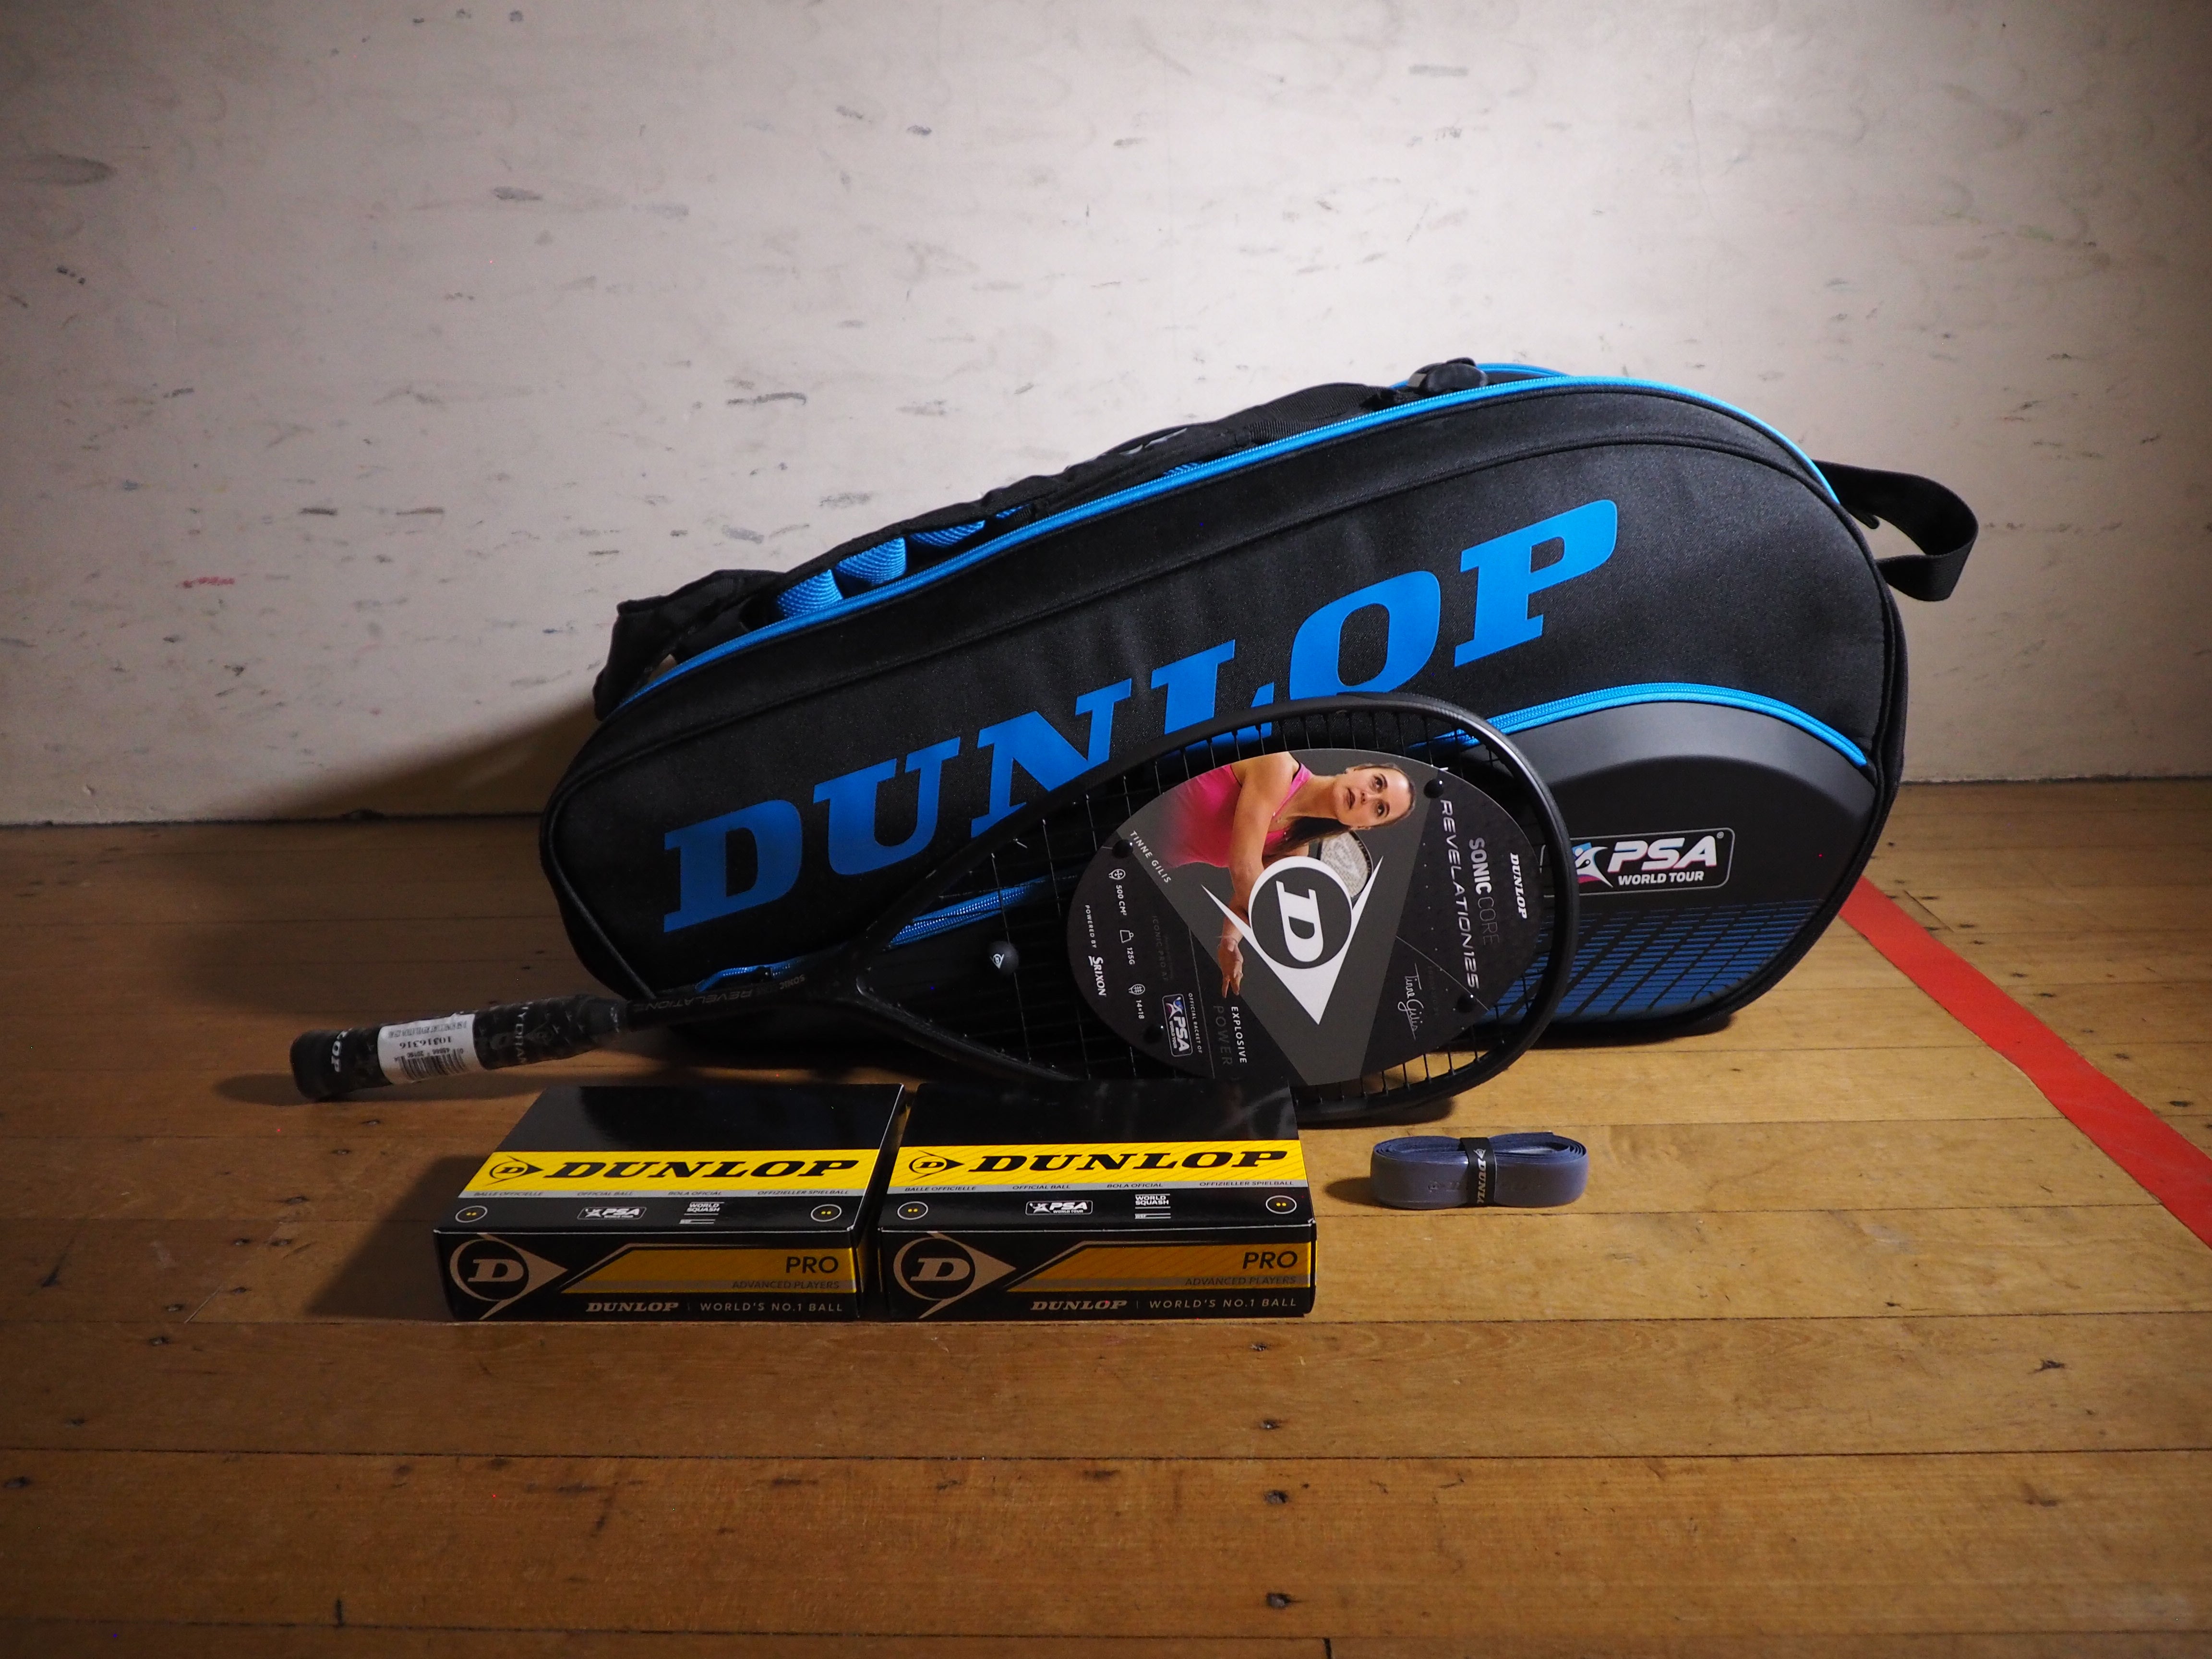 Dunlop Squash Tinne Gilis